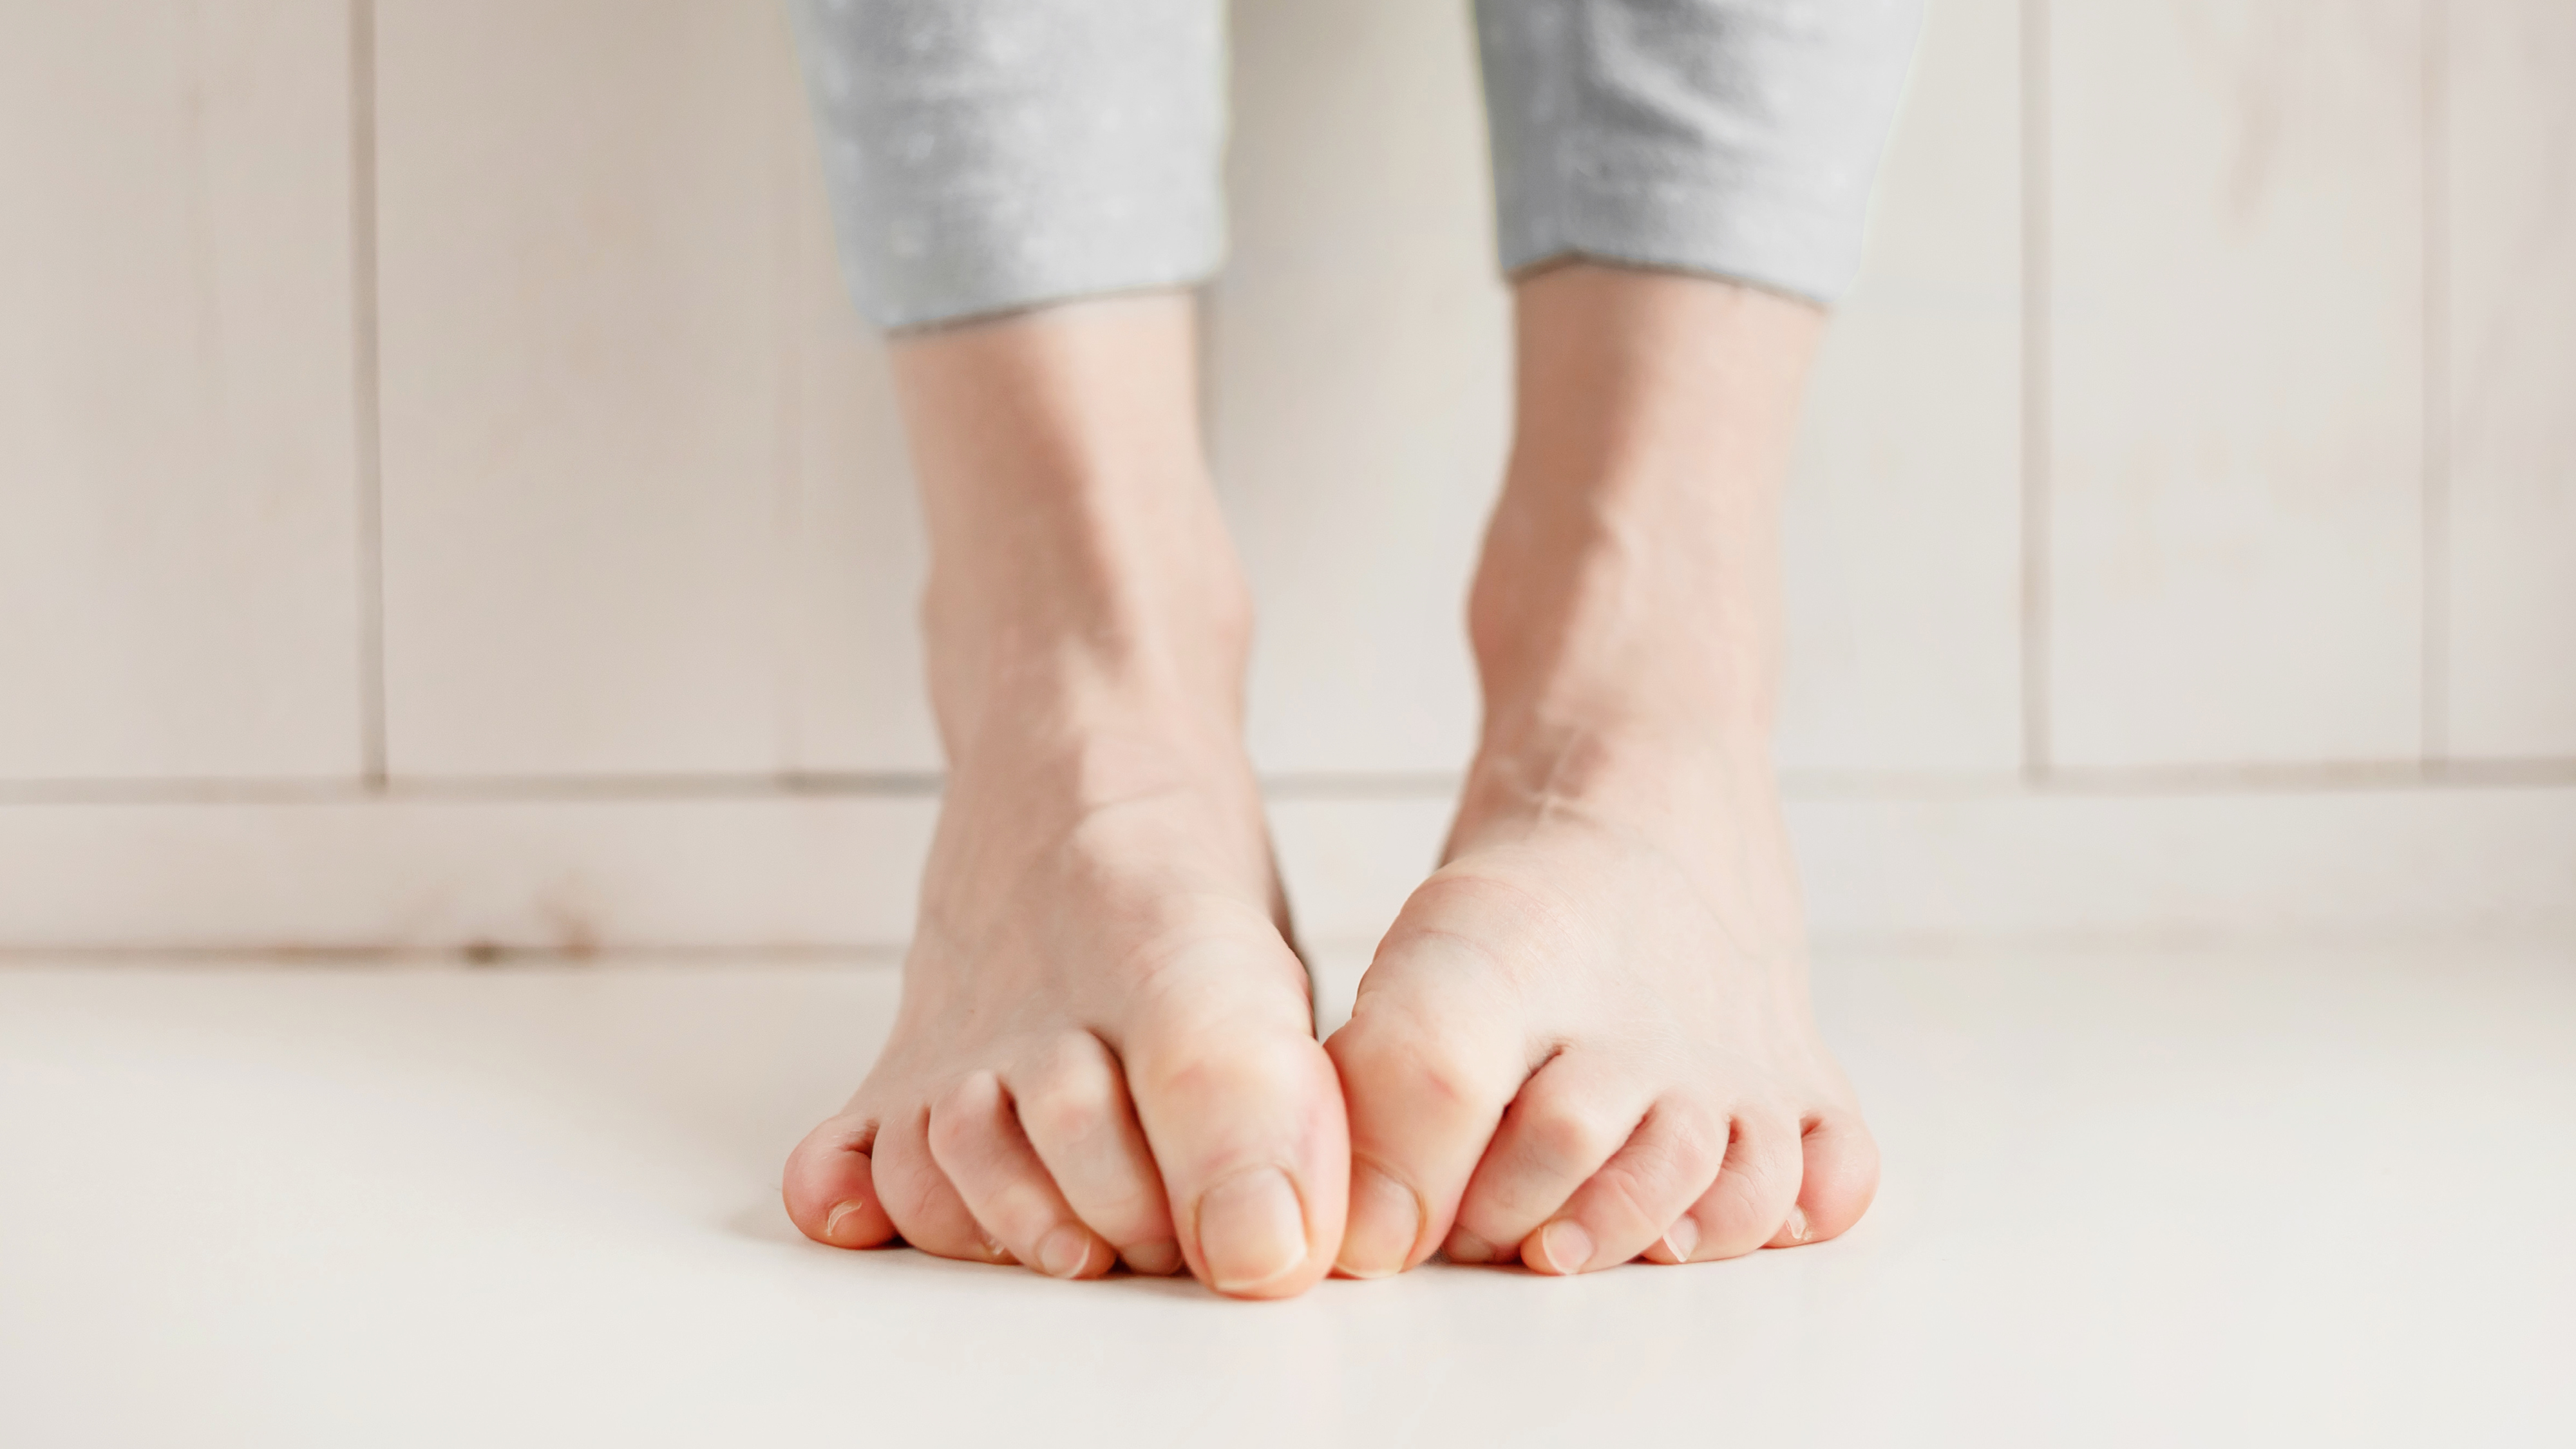 Frau versteckt Fußnägel aufgrund von eingewachsenen oder eingerollten Nägeln.